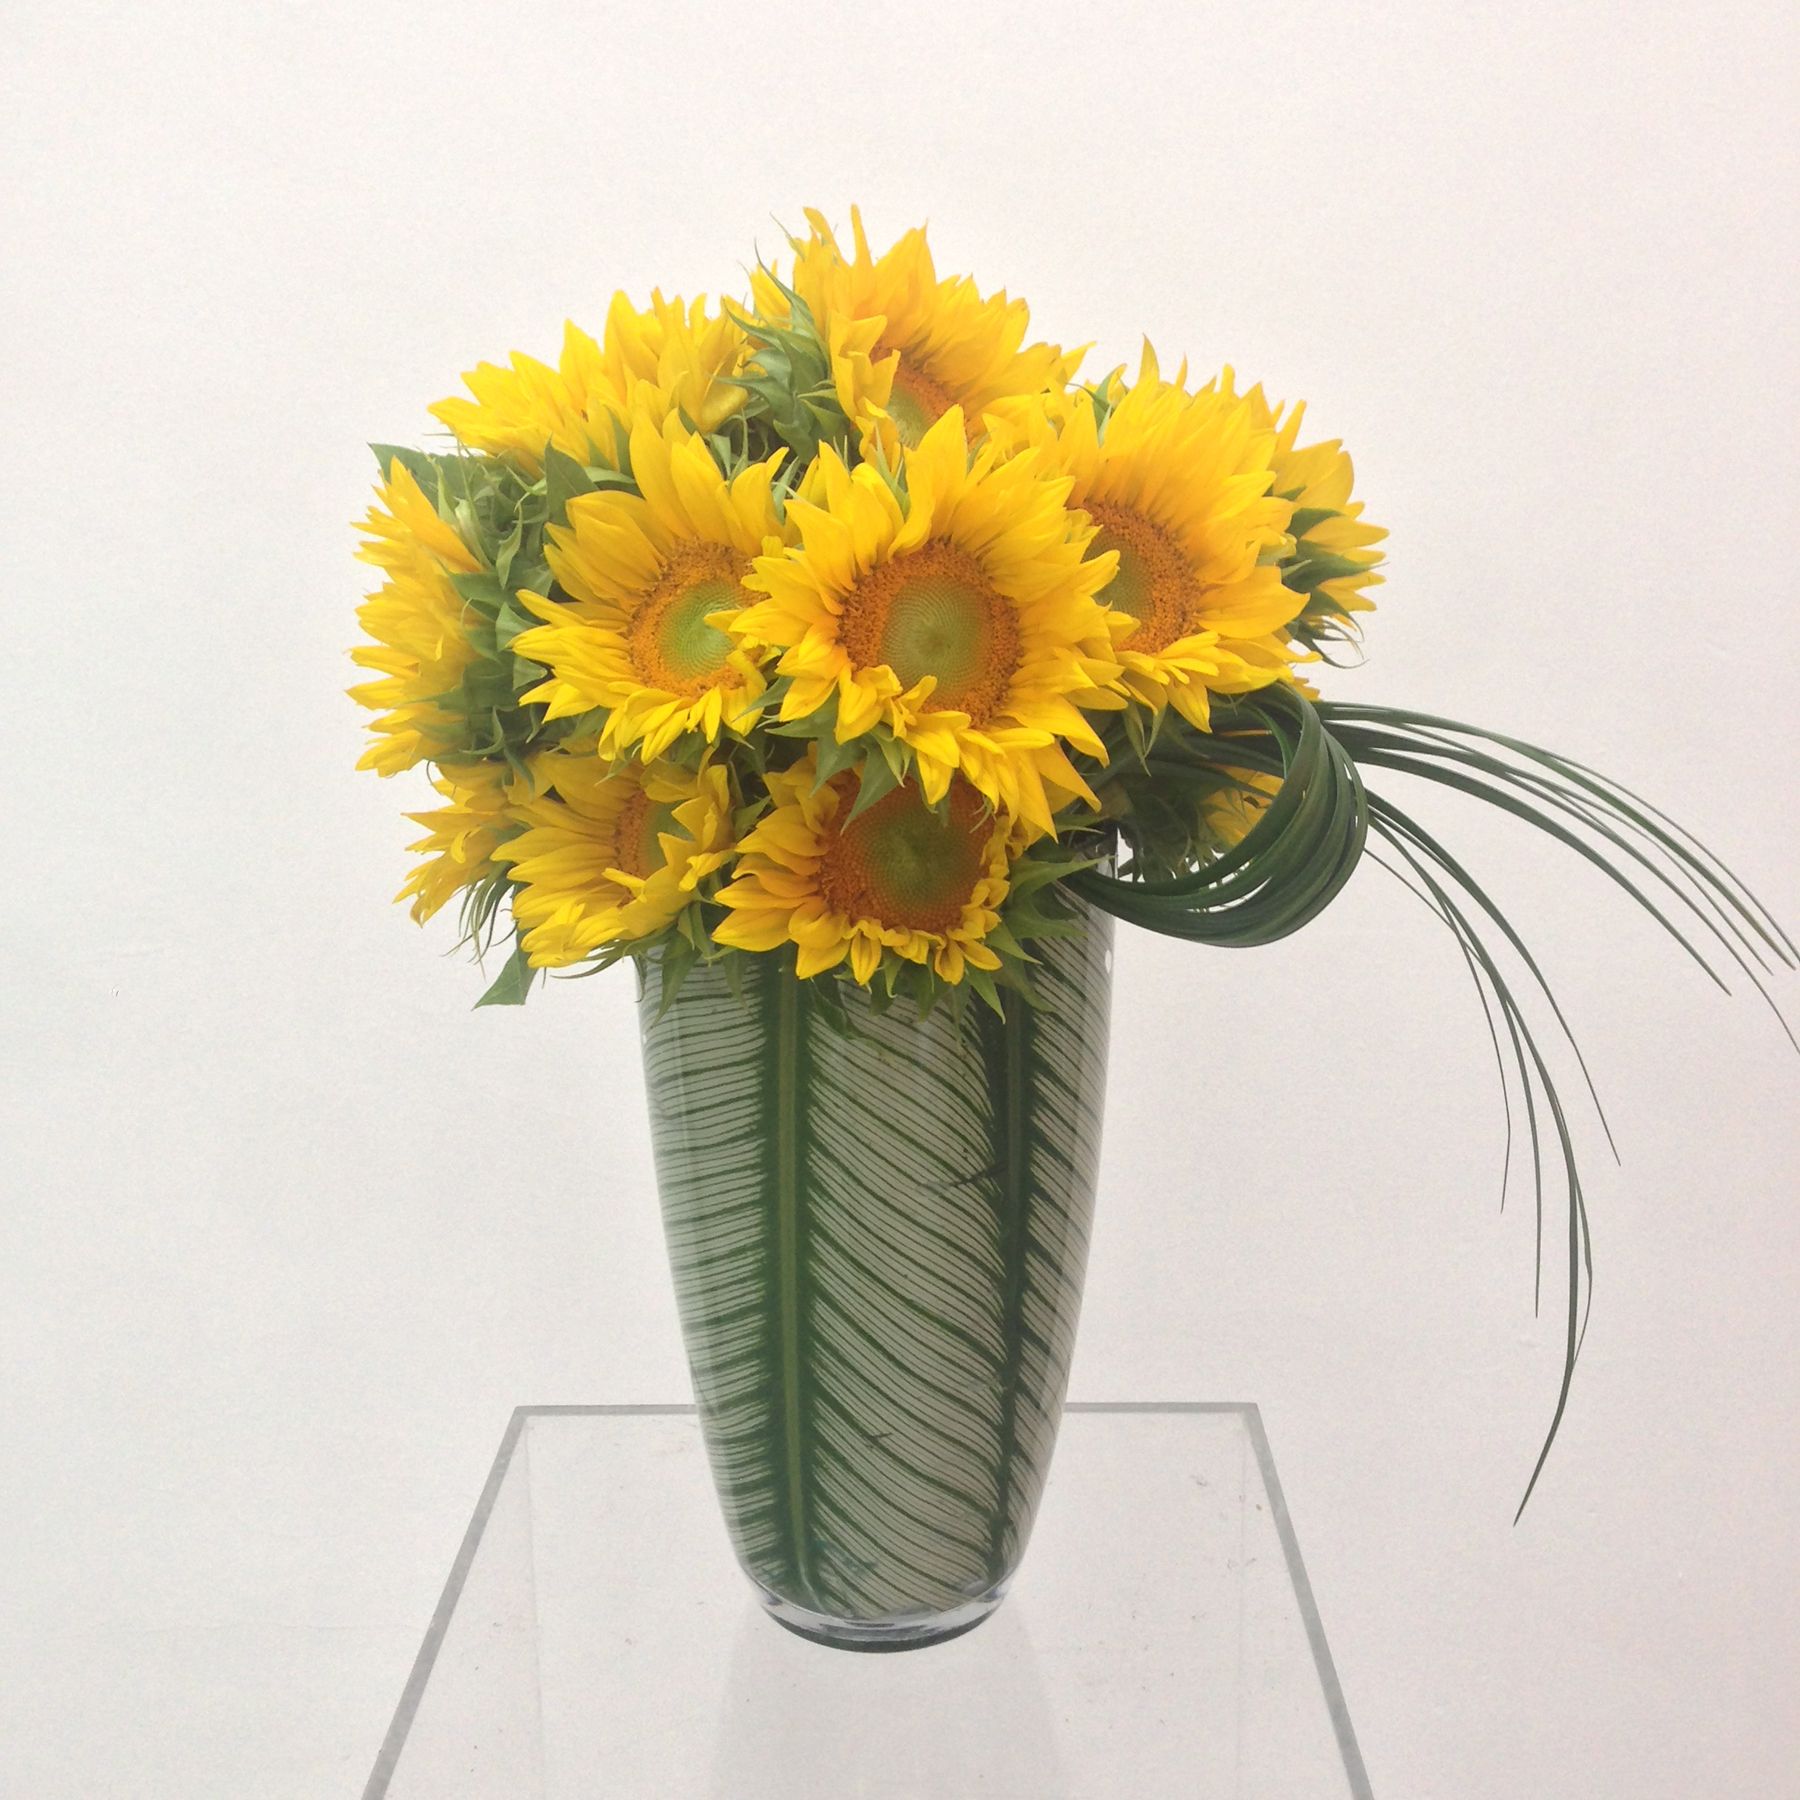 Sonnenblumen in einer ausgekleideten Vase